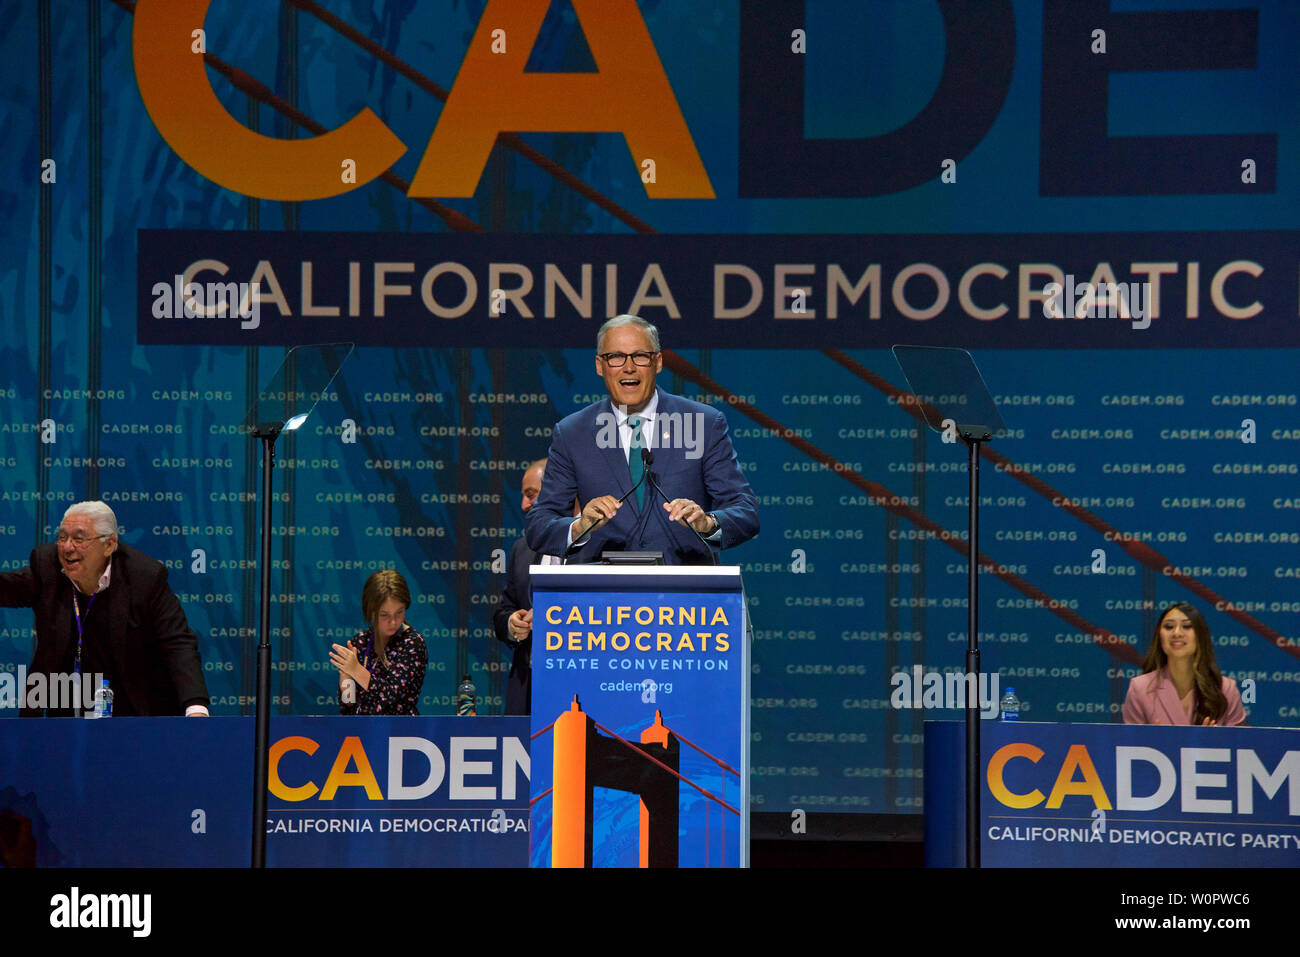 San Francisco, CA - Junio 01, 2019: El candidato presidencial Jay Inslee, regulador de Washington, hablando en la Convención Nacional Demócrata en Moscone Foto de stock